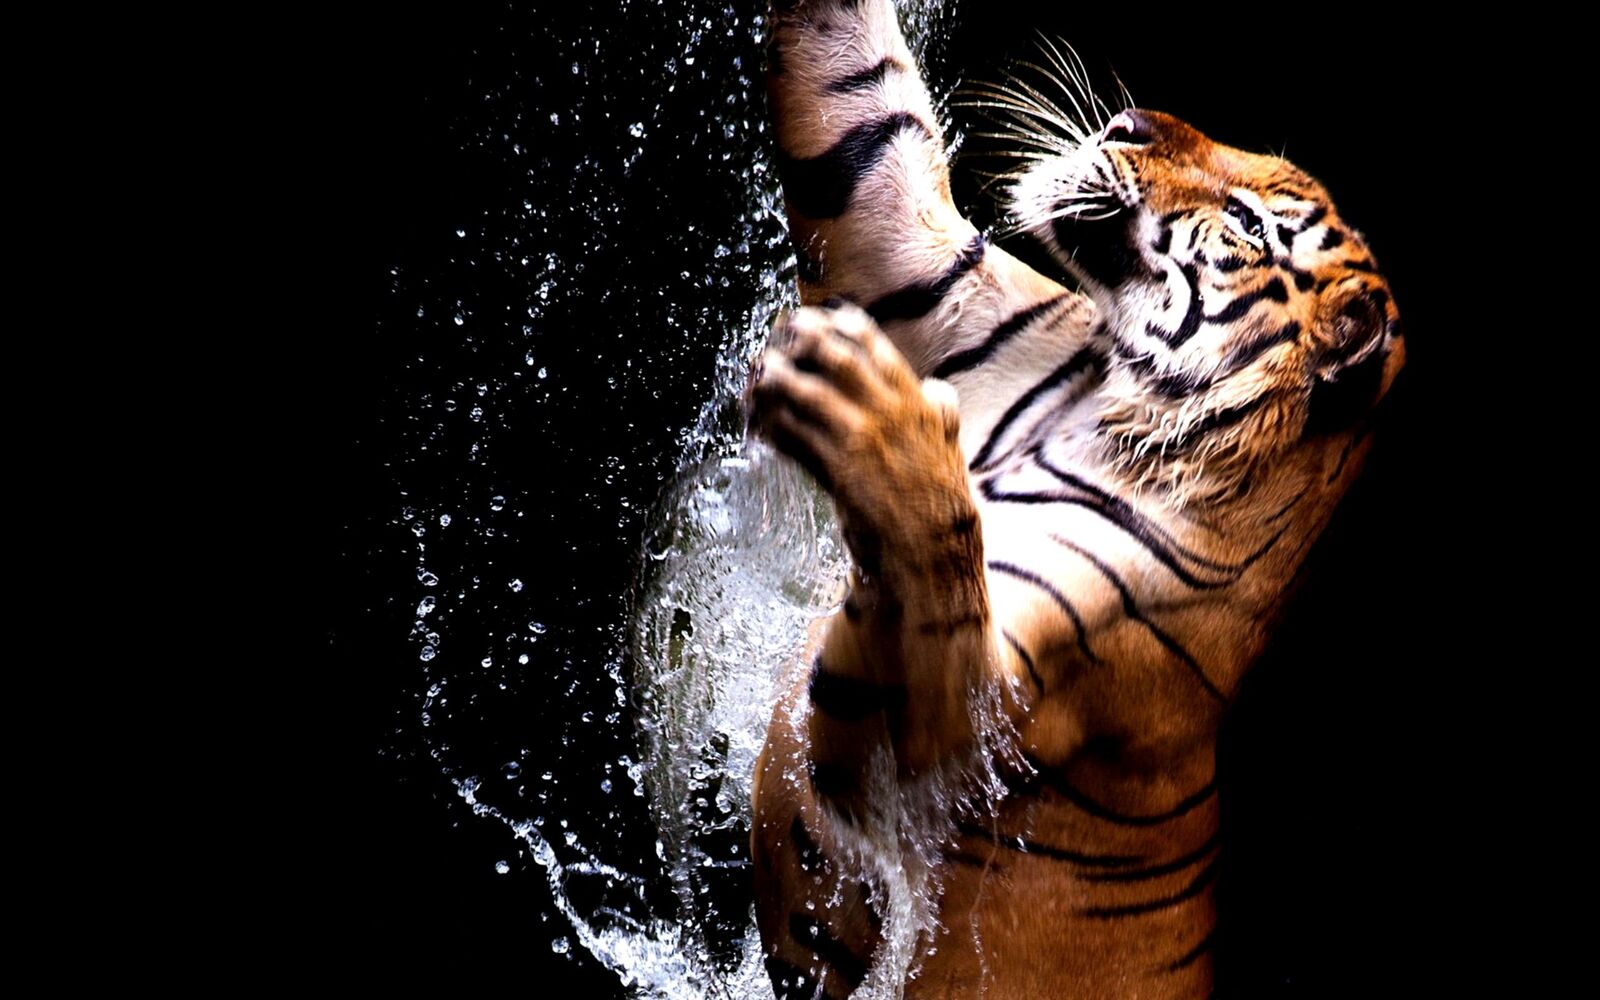 خلفيات النمر مميزة , اجمل صور النمور الملونة , 2021 8K Tiger UHD